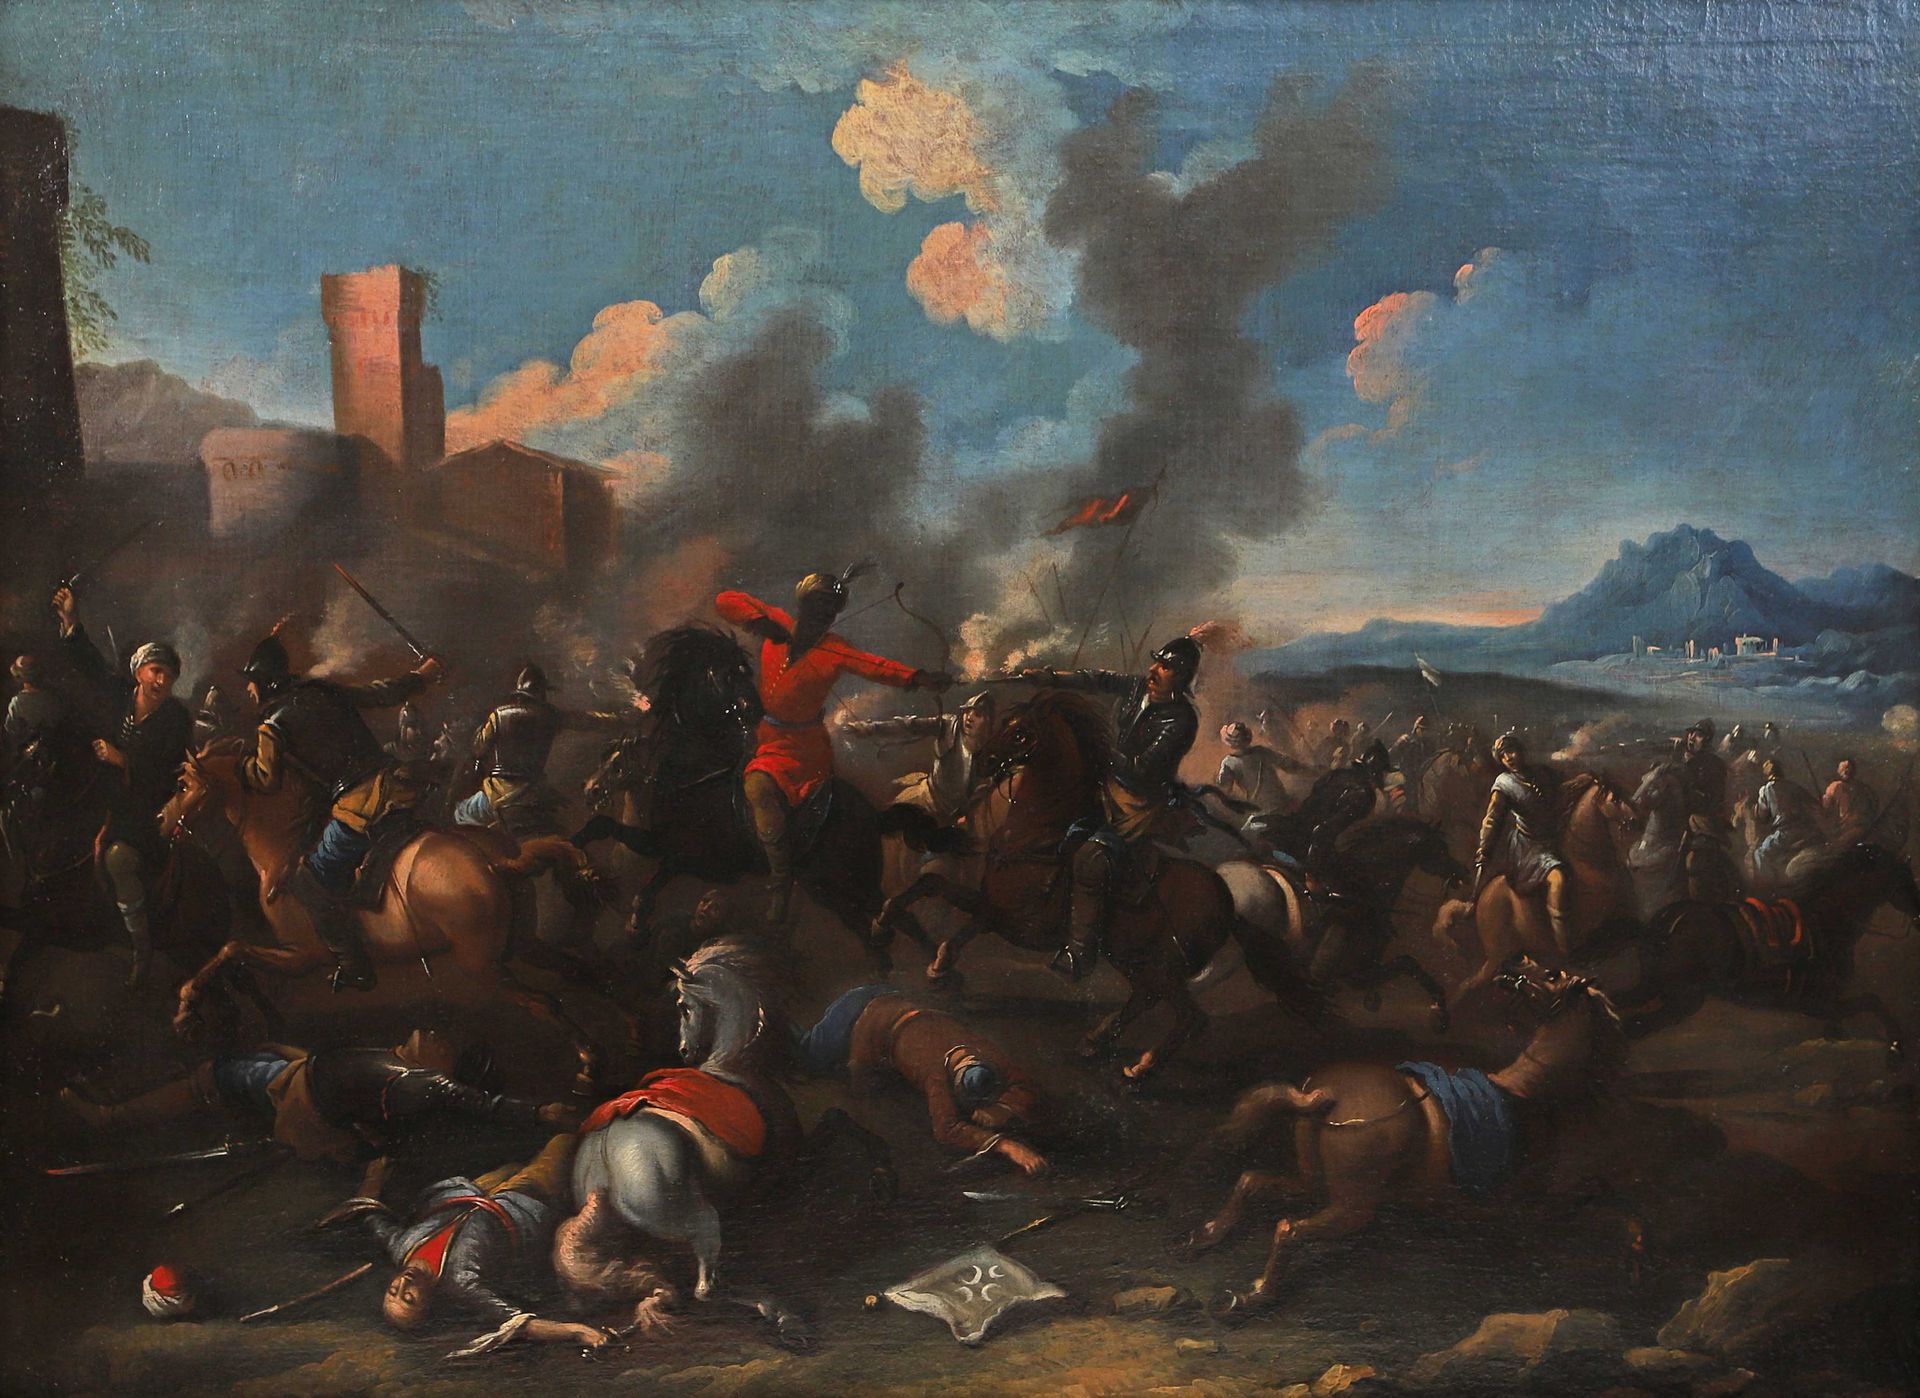 Escuela italiana de finales del siglo XVII, entorno de Antonio CALZA  Batalla entre los turcos y los cristianos Lienzo 103 x 138 cm